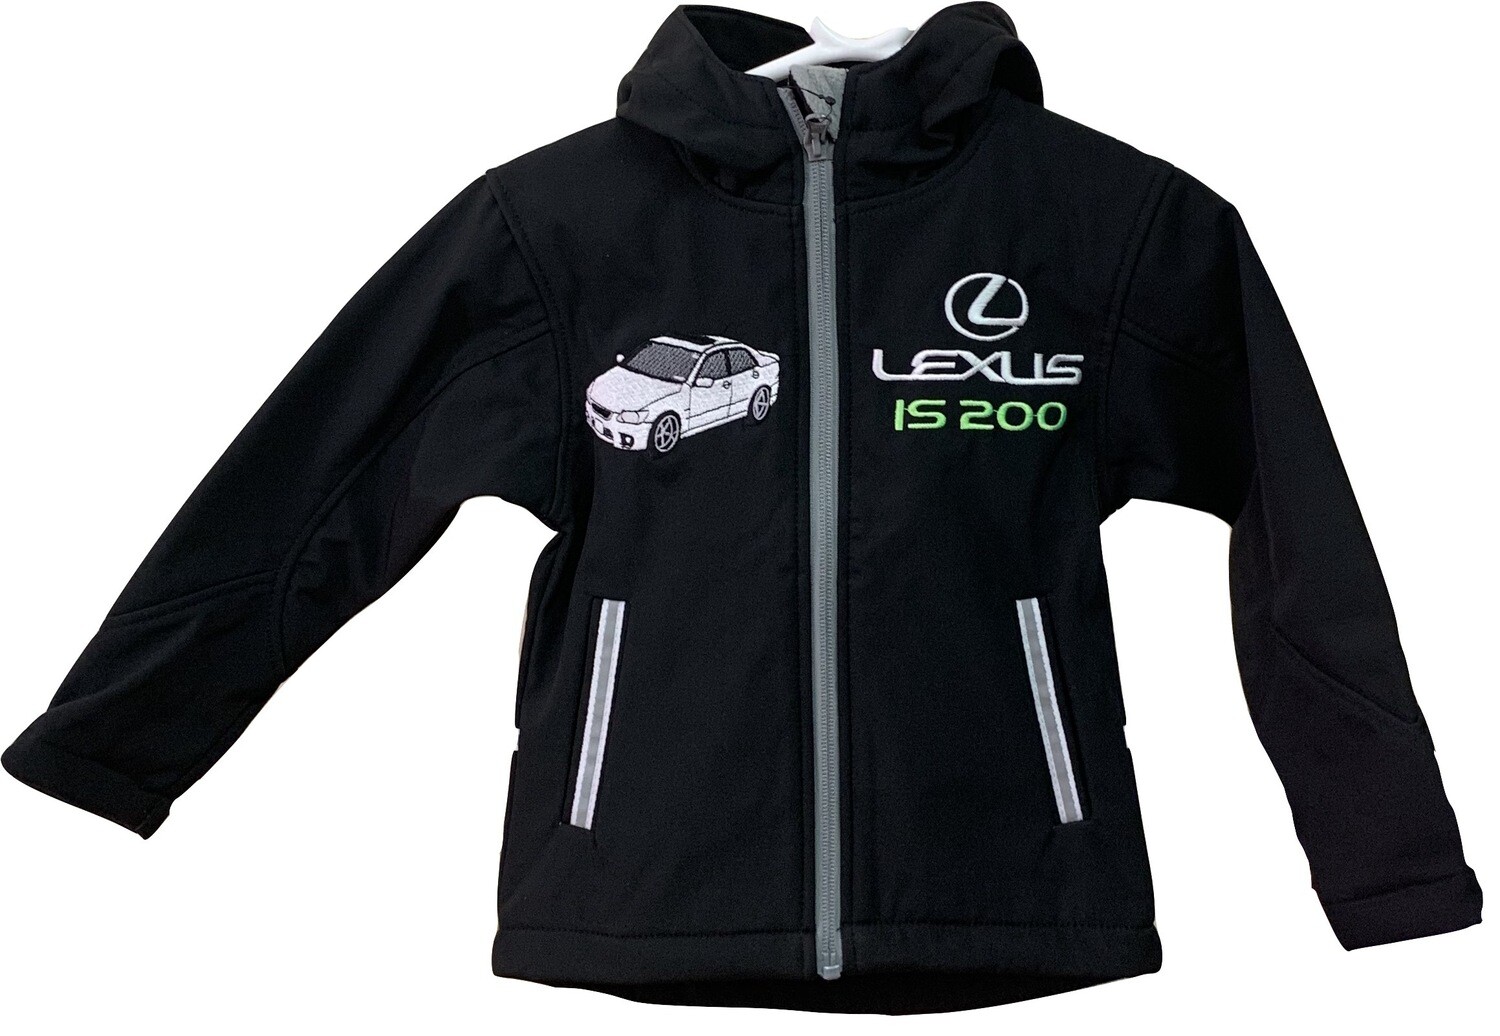 LEXUS IS200 Kids Jacket soft shell